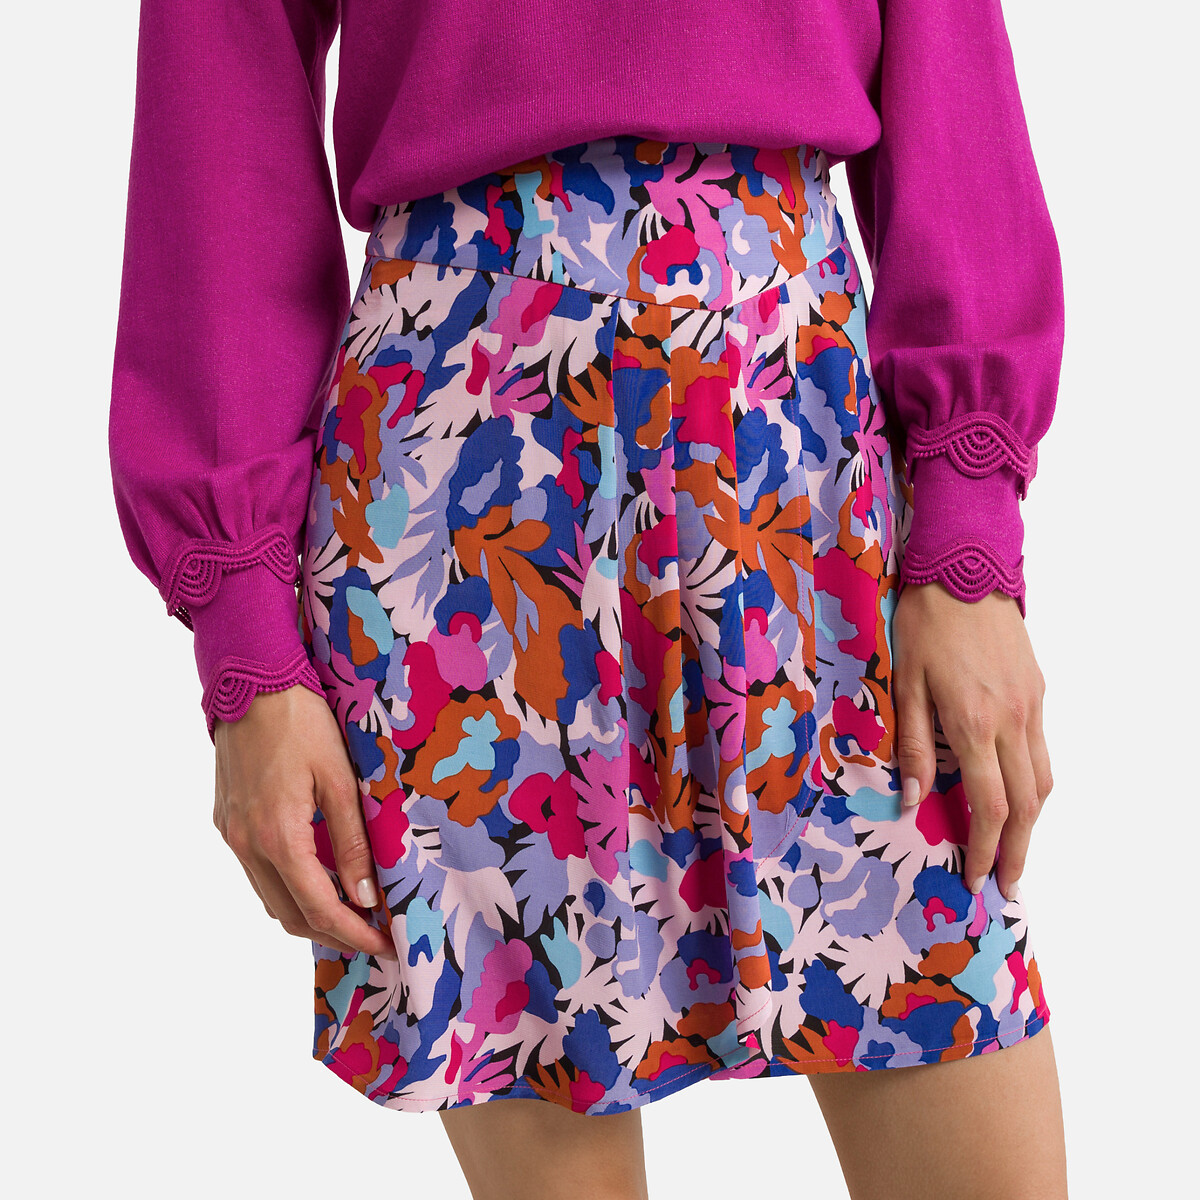 Fer Mini Skirt in Multicolour Floral Print